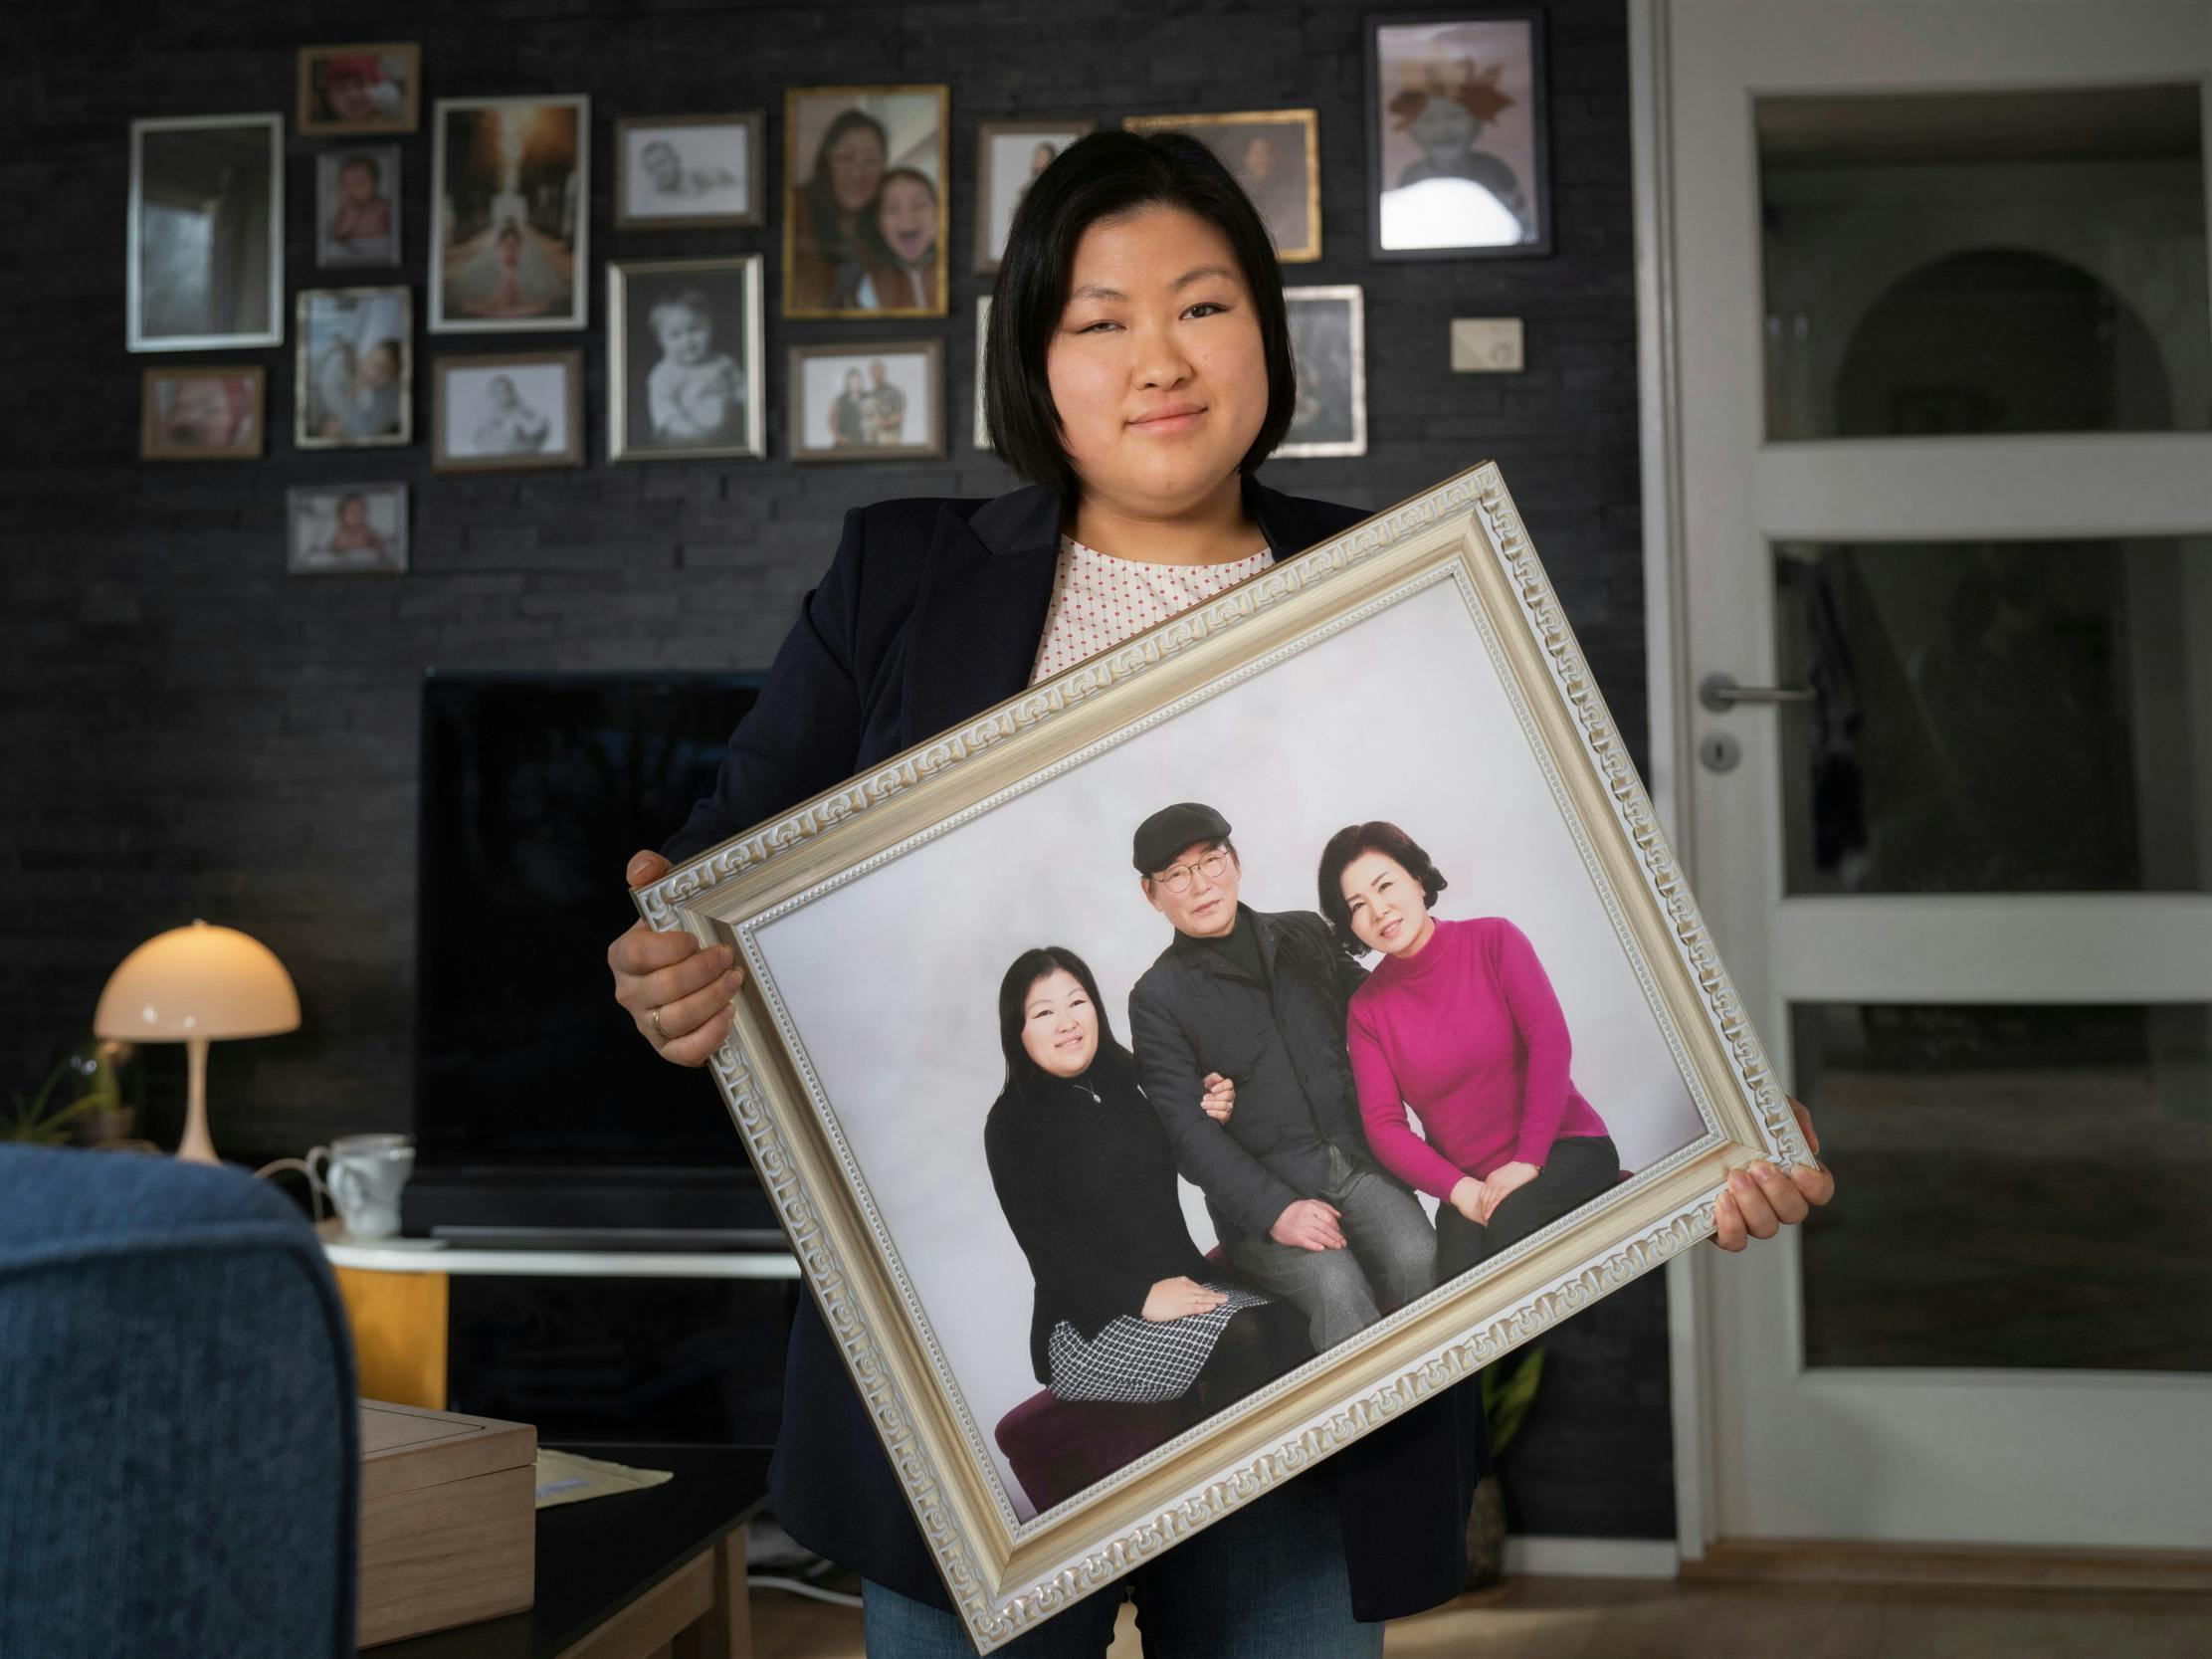 Mia Lee fik taget et billede sammen med sine biologiske forældre, Lee Chang og Jeong Chae, da hun mødte dem for første gang i sit liv sidste år i december.